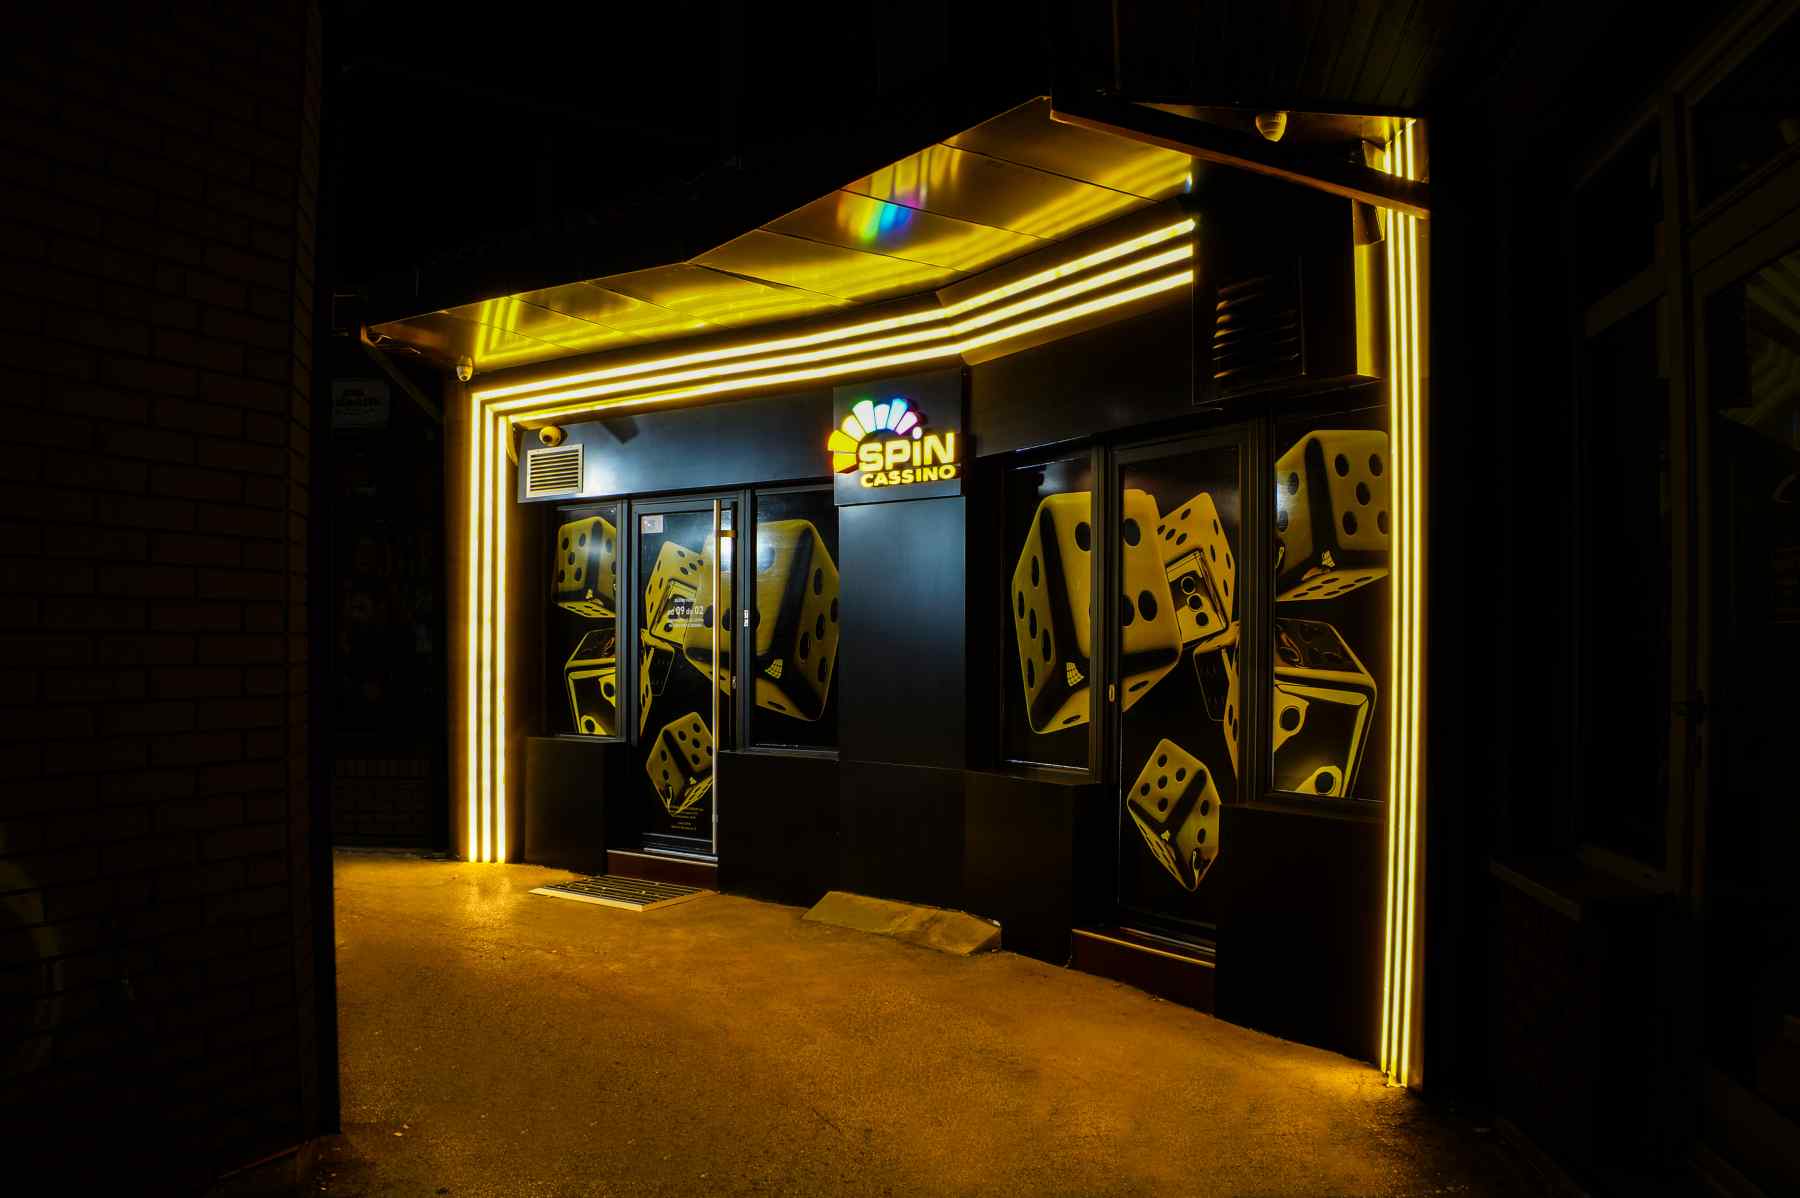 Prolaz koji vodi do lokala Spin kazina na Bulevaru Nemanjića broj 4 koji je ukrašen u žuto-crnim nijansama